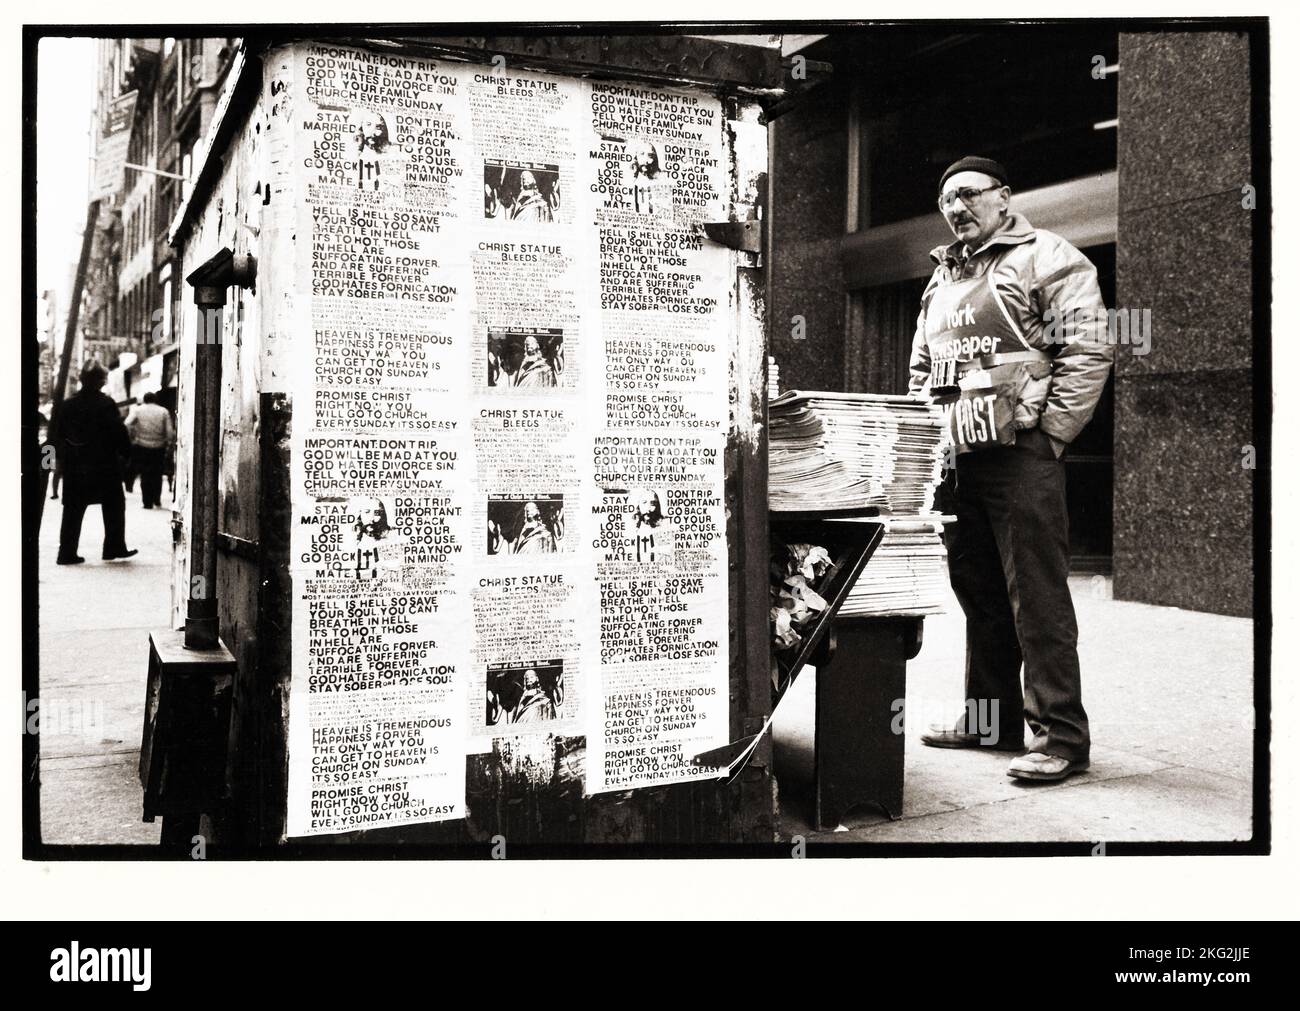 Ein Zeitungskiosk mit Plakaten über Jesus, Himmel und Hölle. Auf der Seventh Avenue in Manhattan in den späten 1970er. Stockfoto